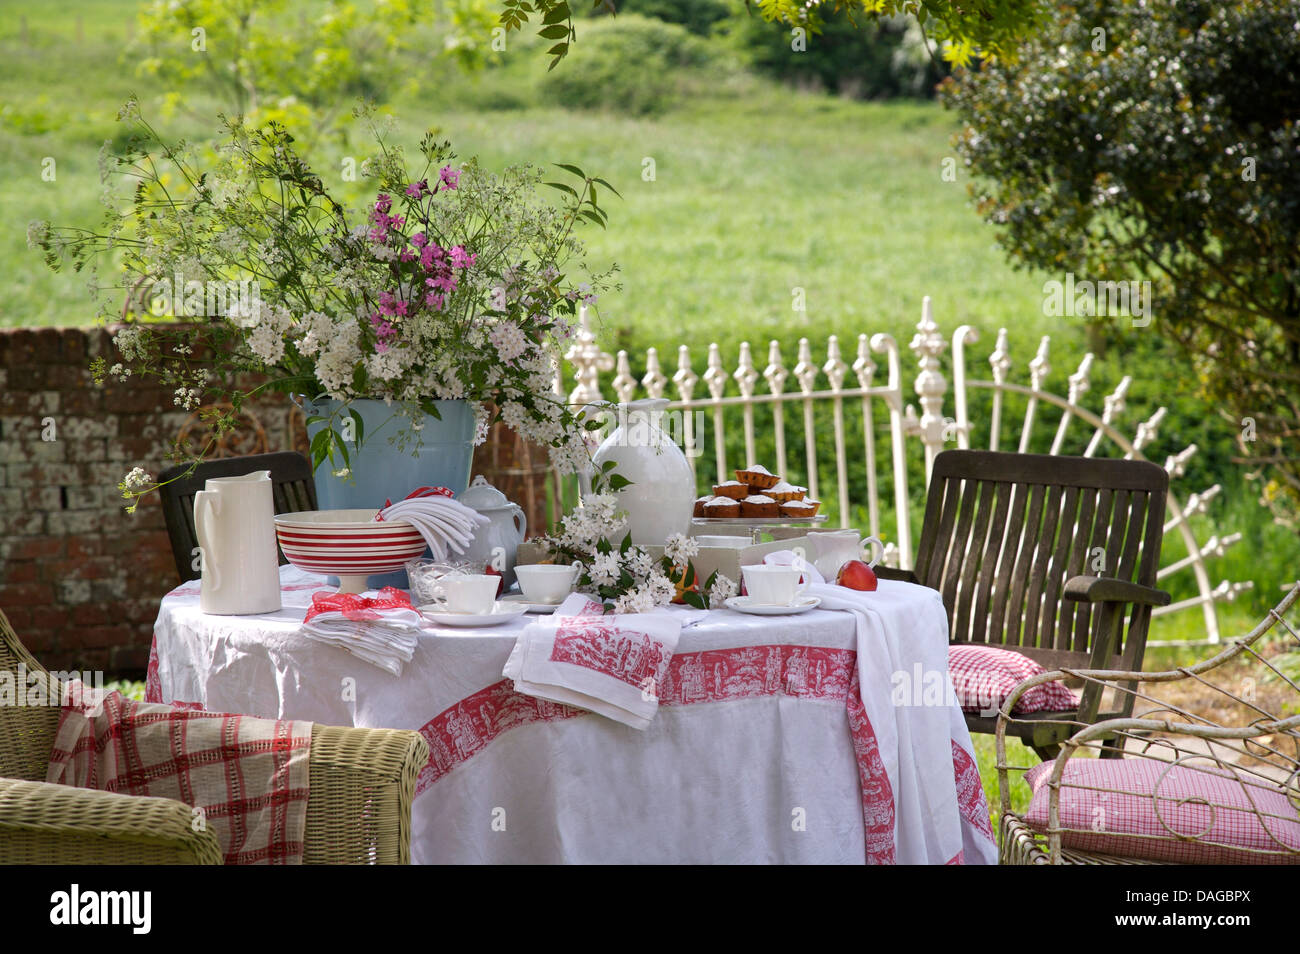 Césped en Country Garden con jarrón de flores de verano sobre la mesa con la jarra y cuencos de tela de lino blanco y rojo con bordes Foto de stock